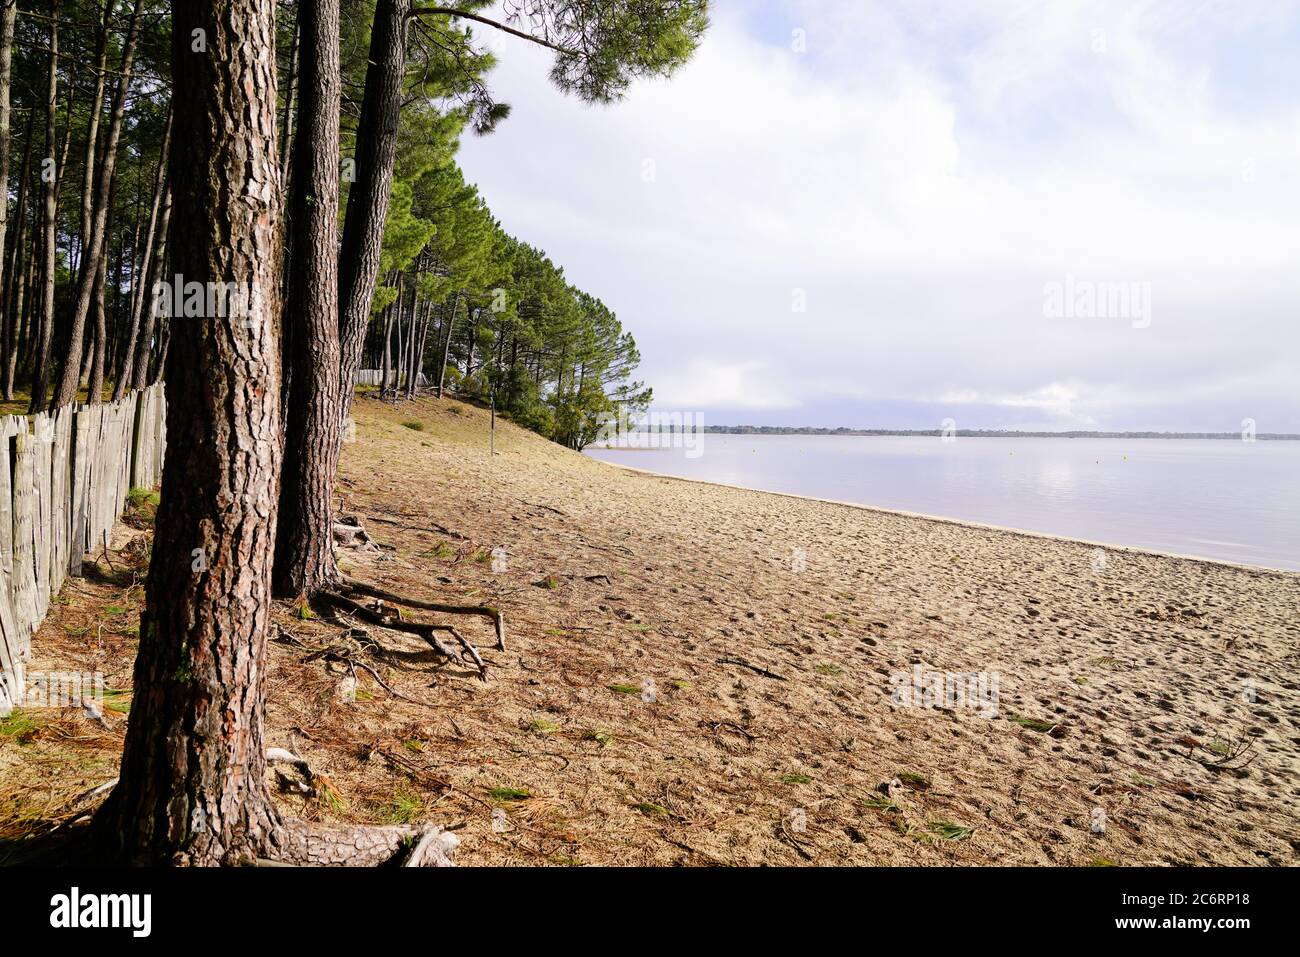 plage de sable de sanguinet avec forêt de pins dans les landes france Banque D'Images